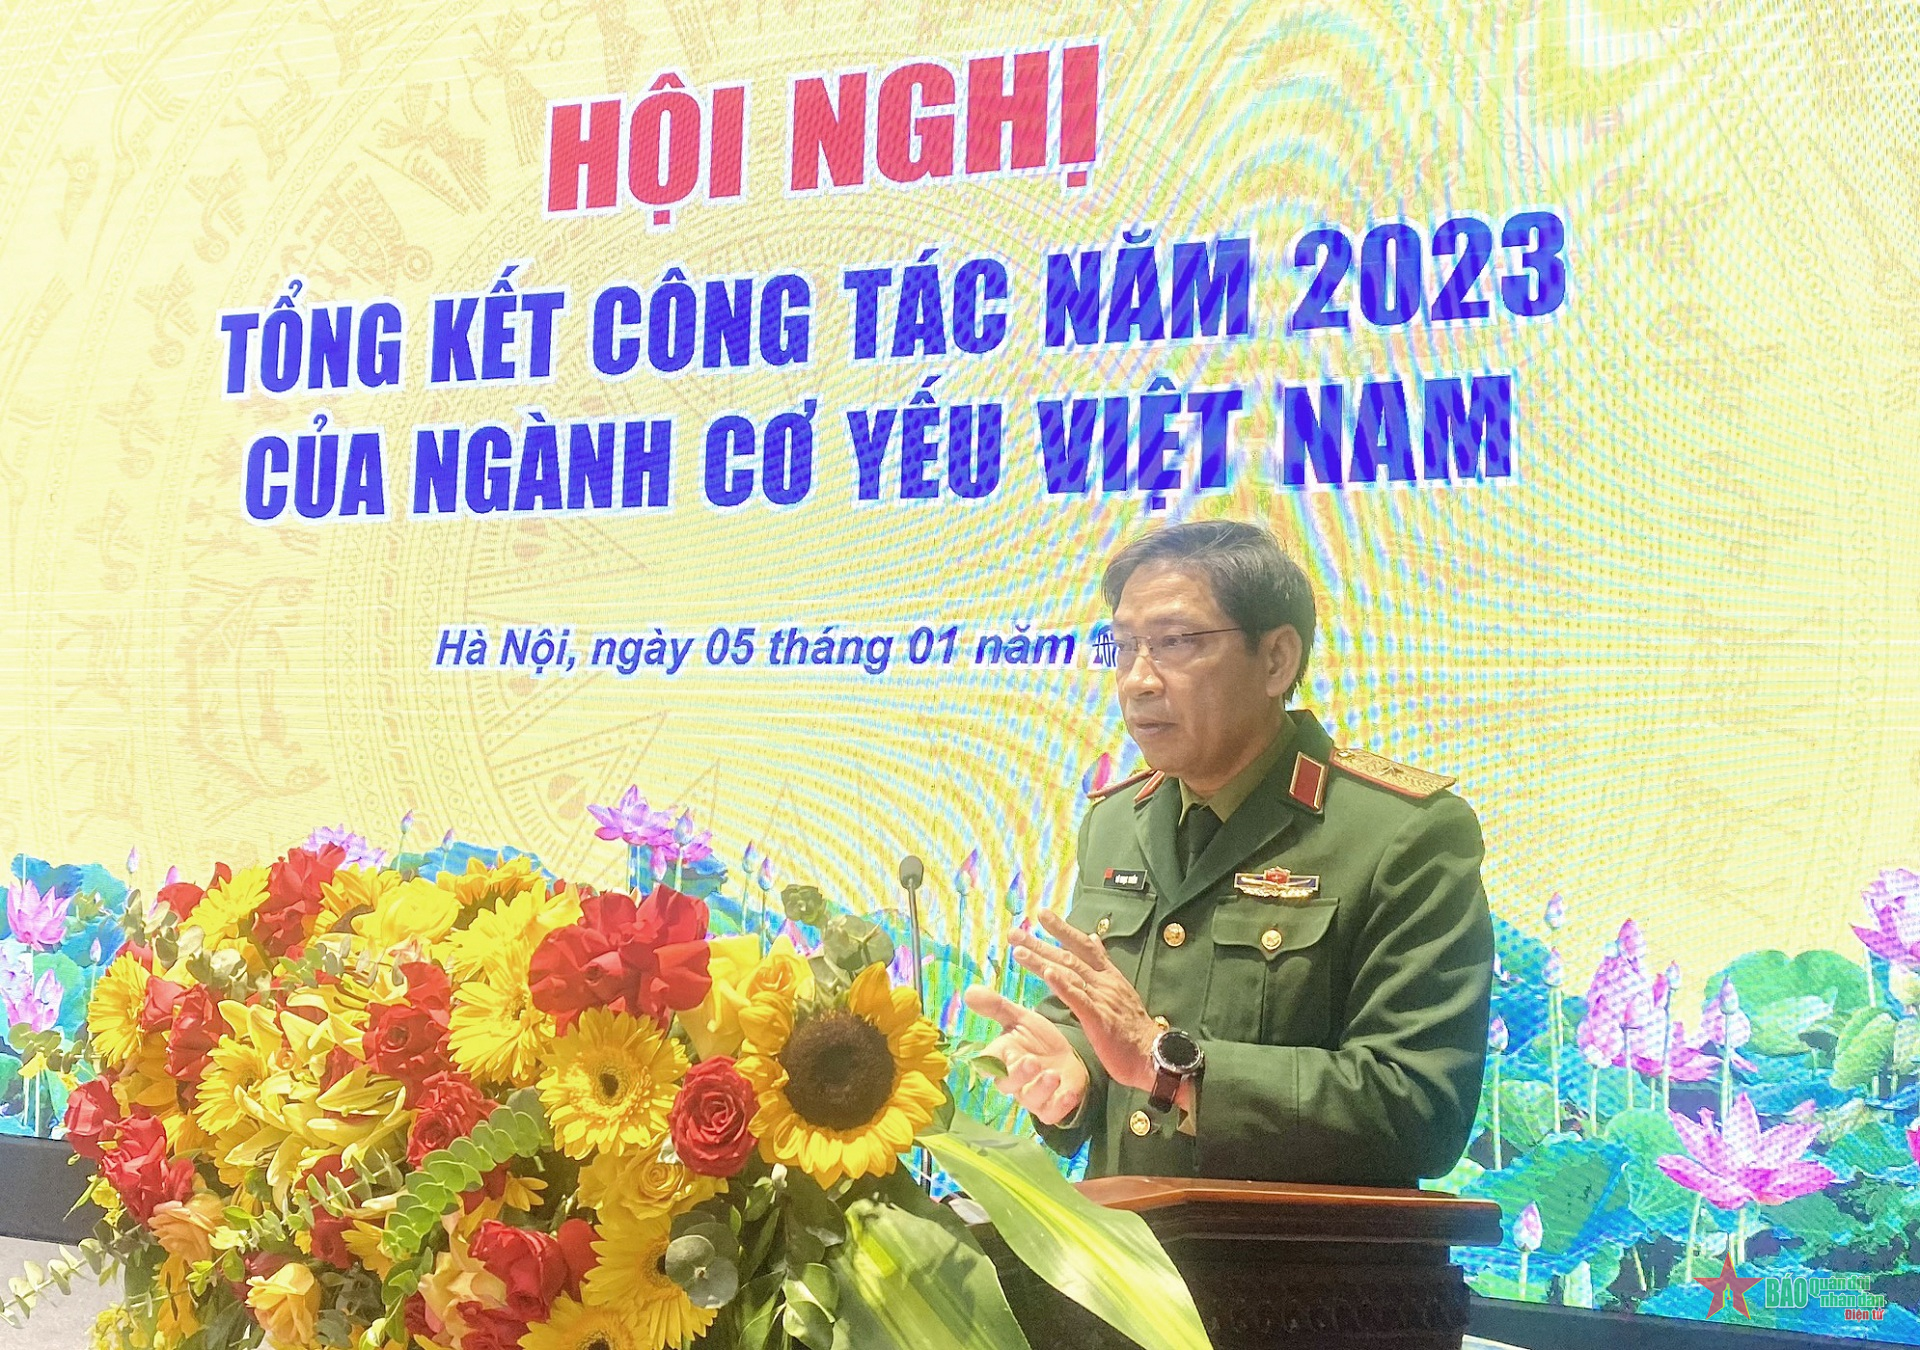 Ngành cơ yếu Việt Nam tổng kết công tác năm 2023